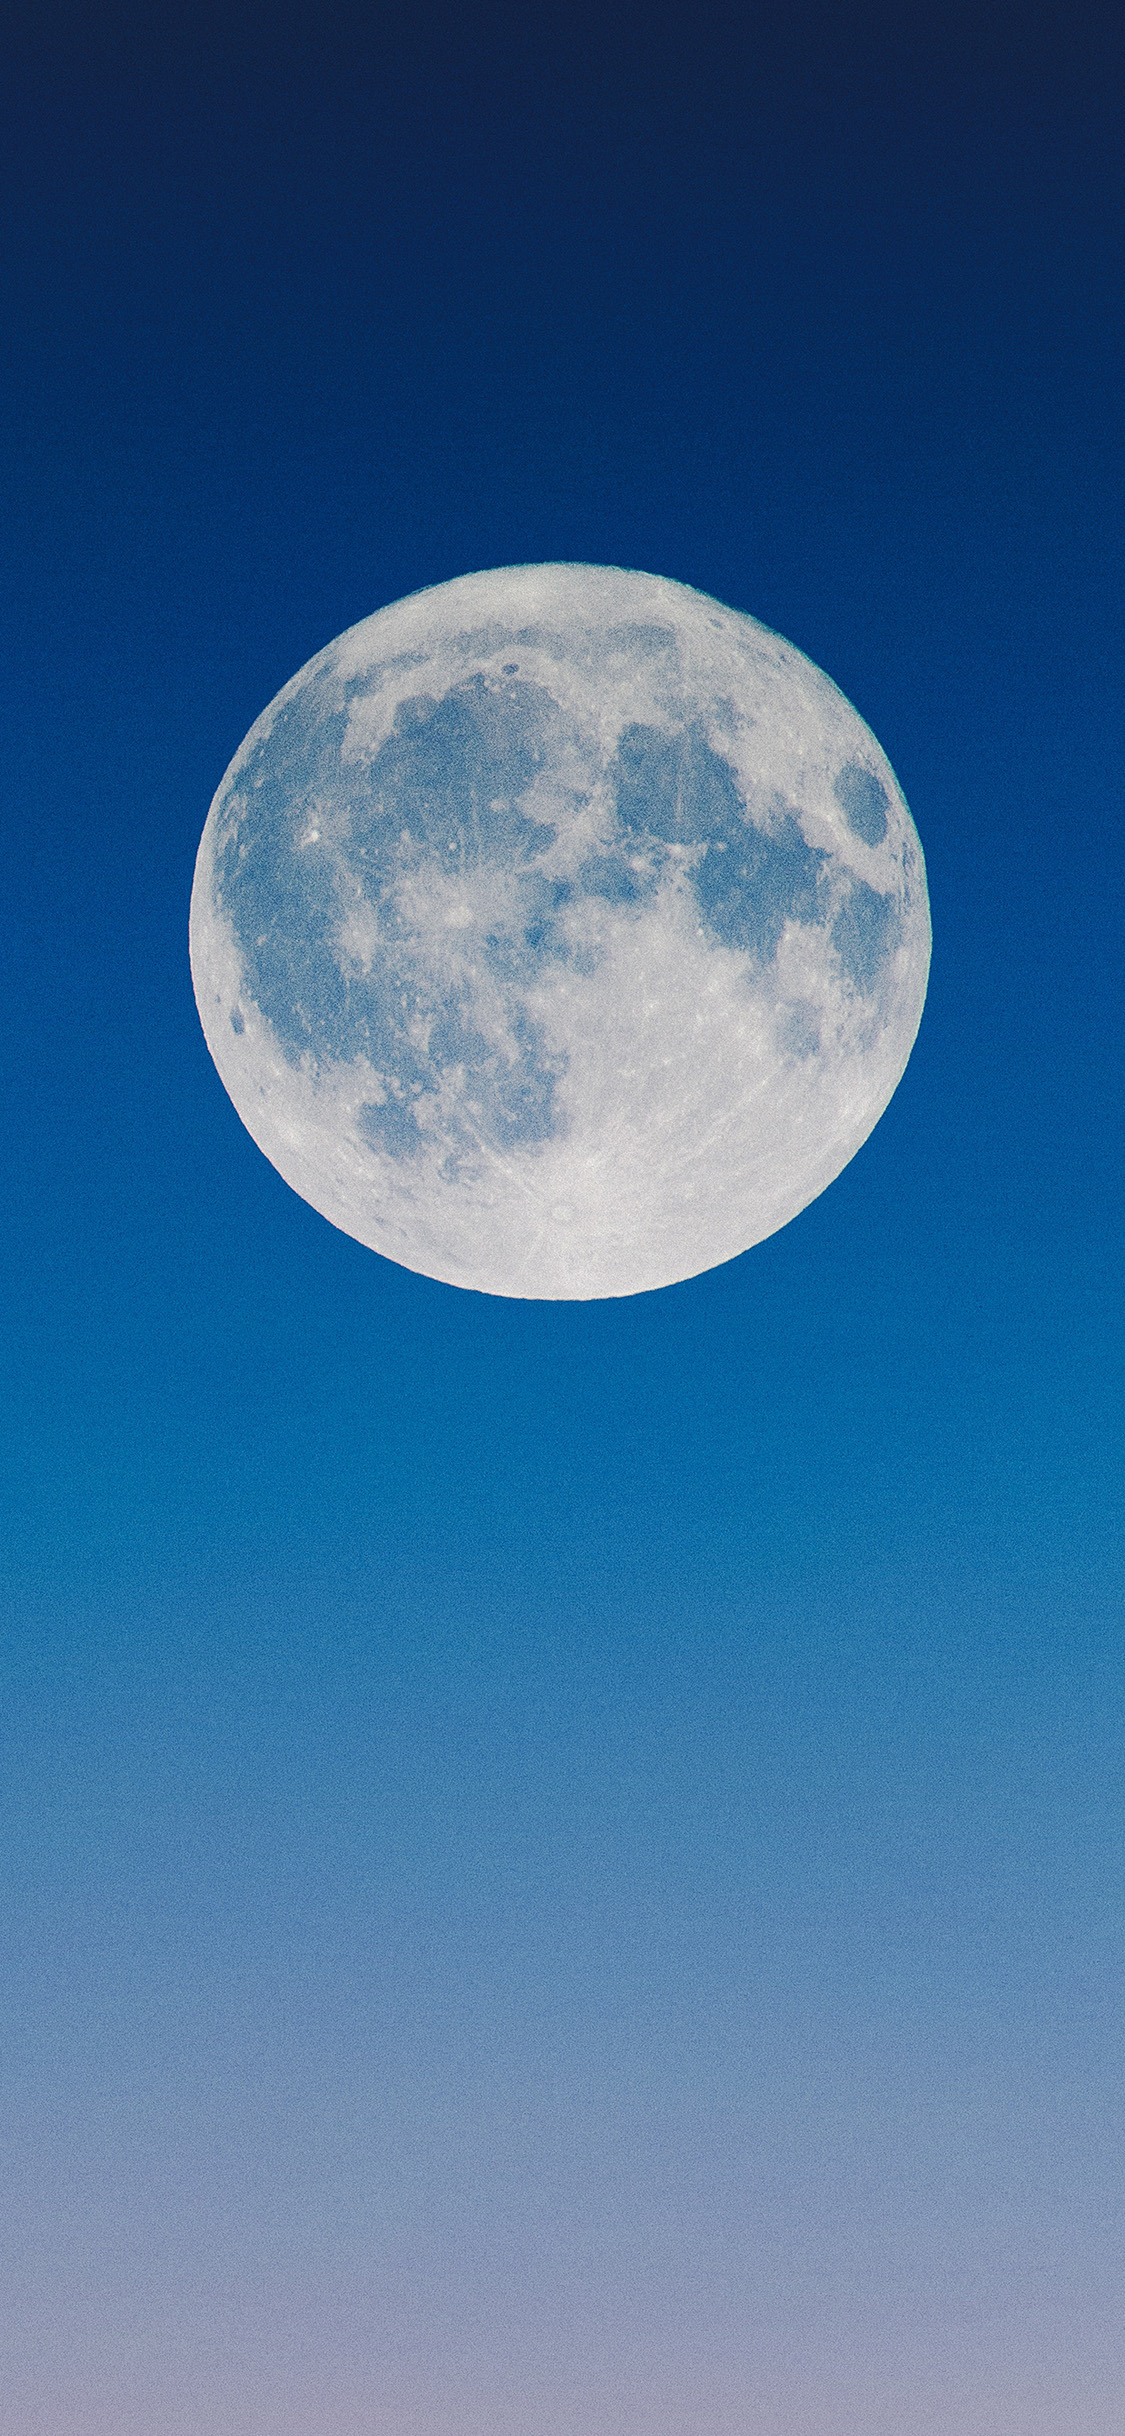 fond d'écran lune iphone,lune,ciel,jour,la nature,bleu